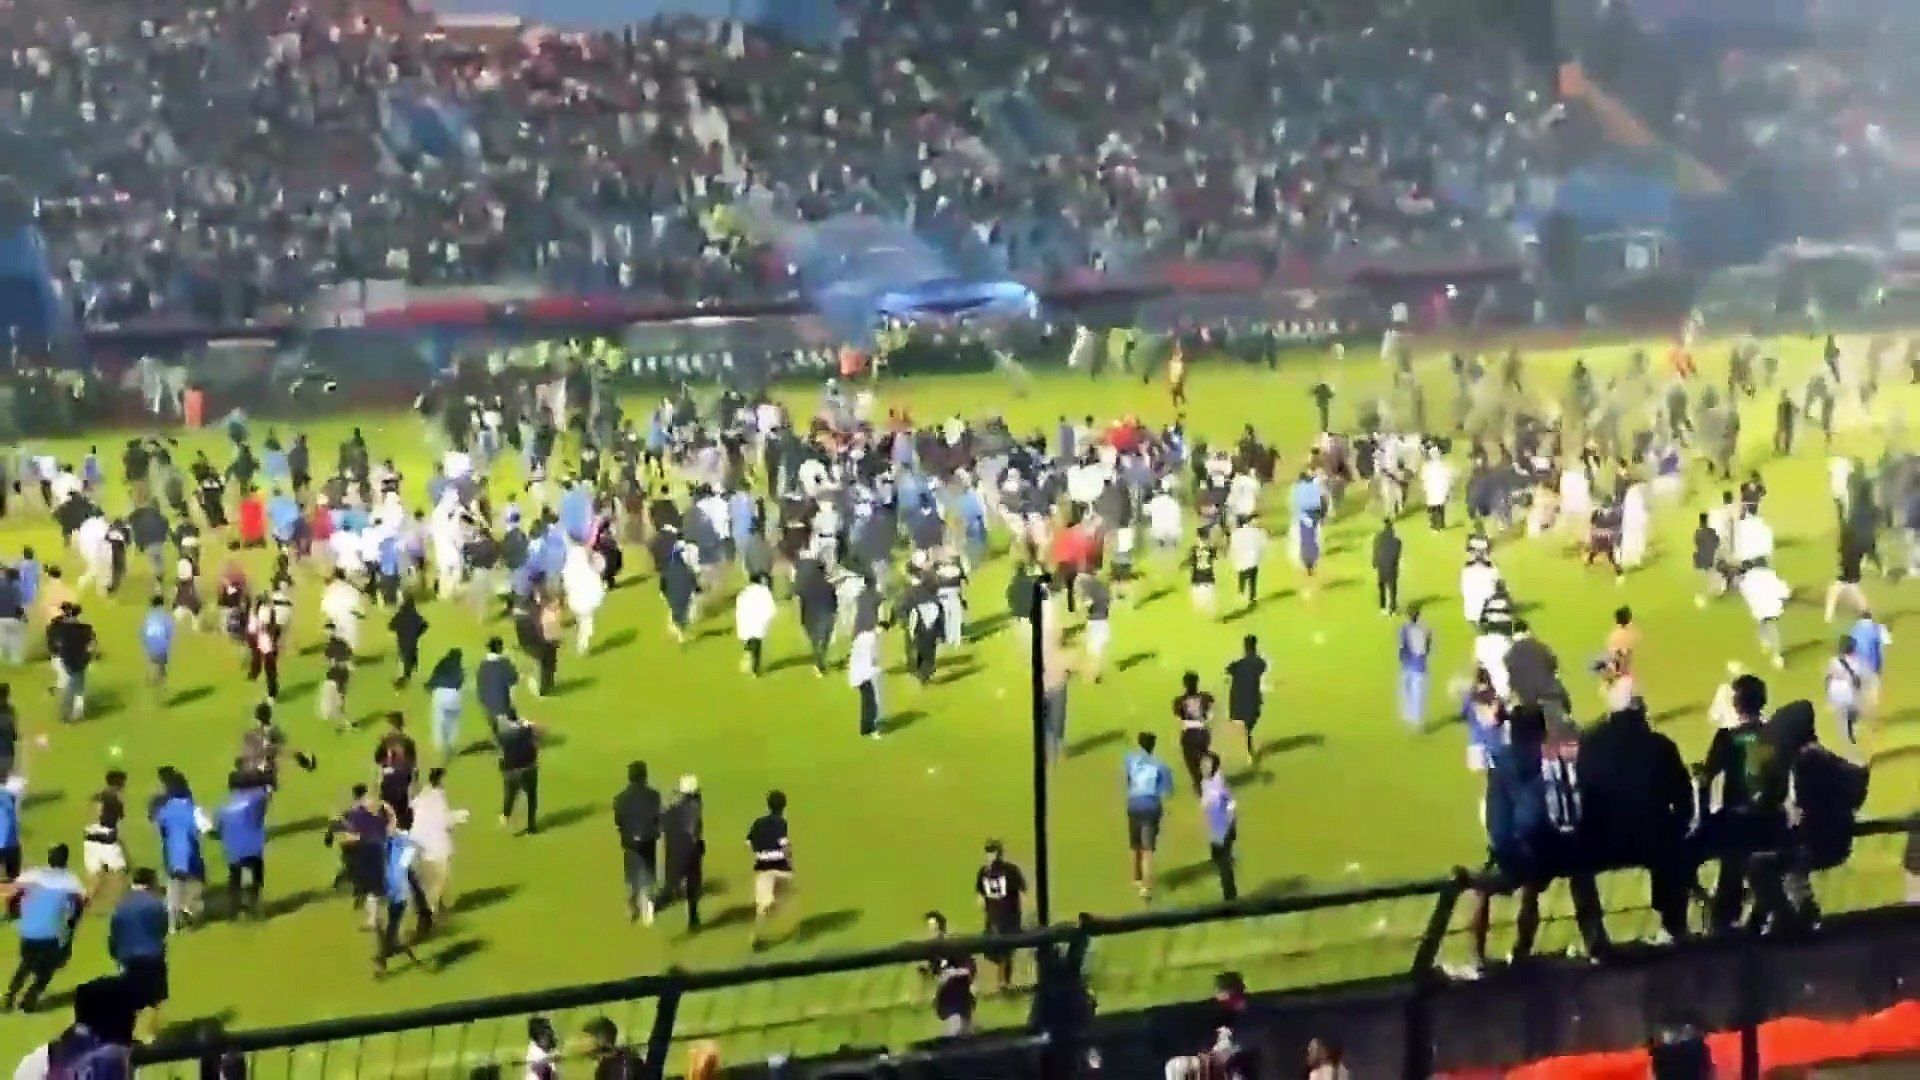 Tragedia en Indonesia: más de 100 muertos en un partido de fútbol